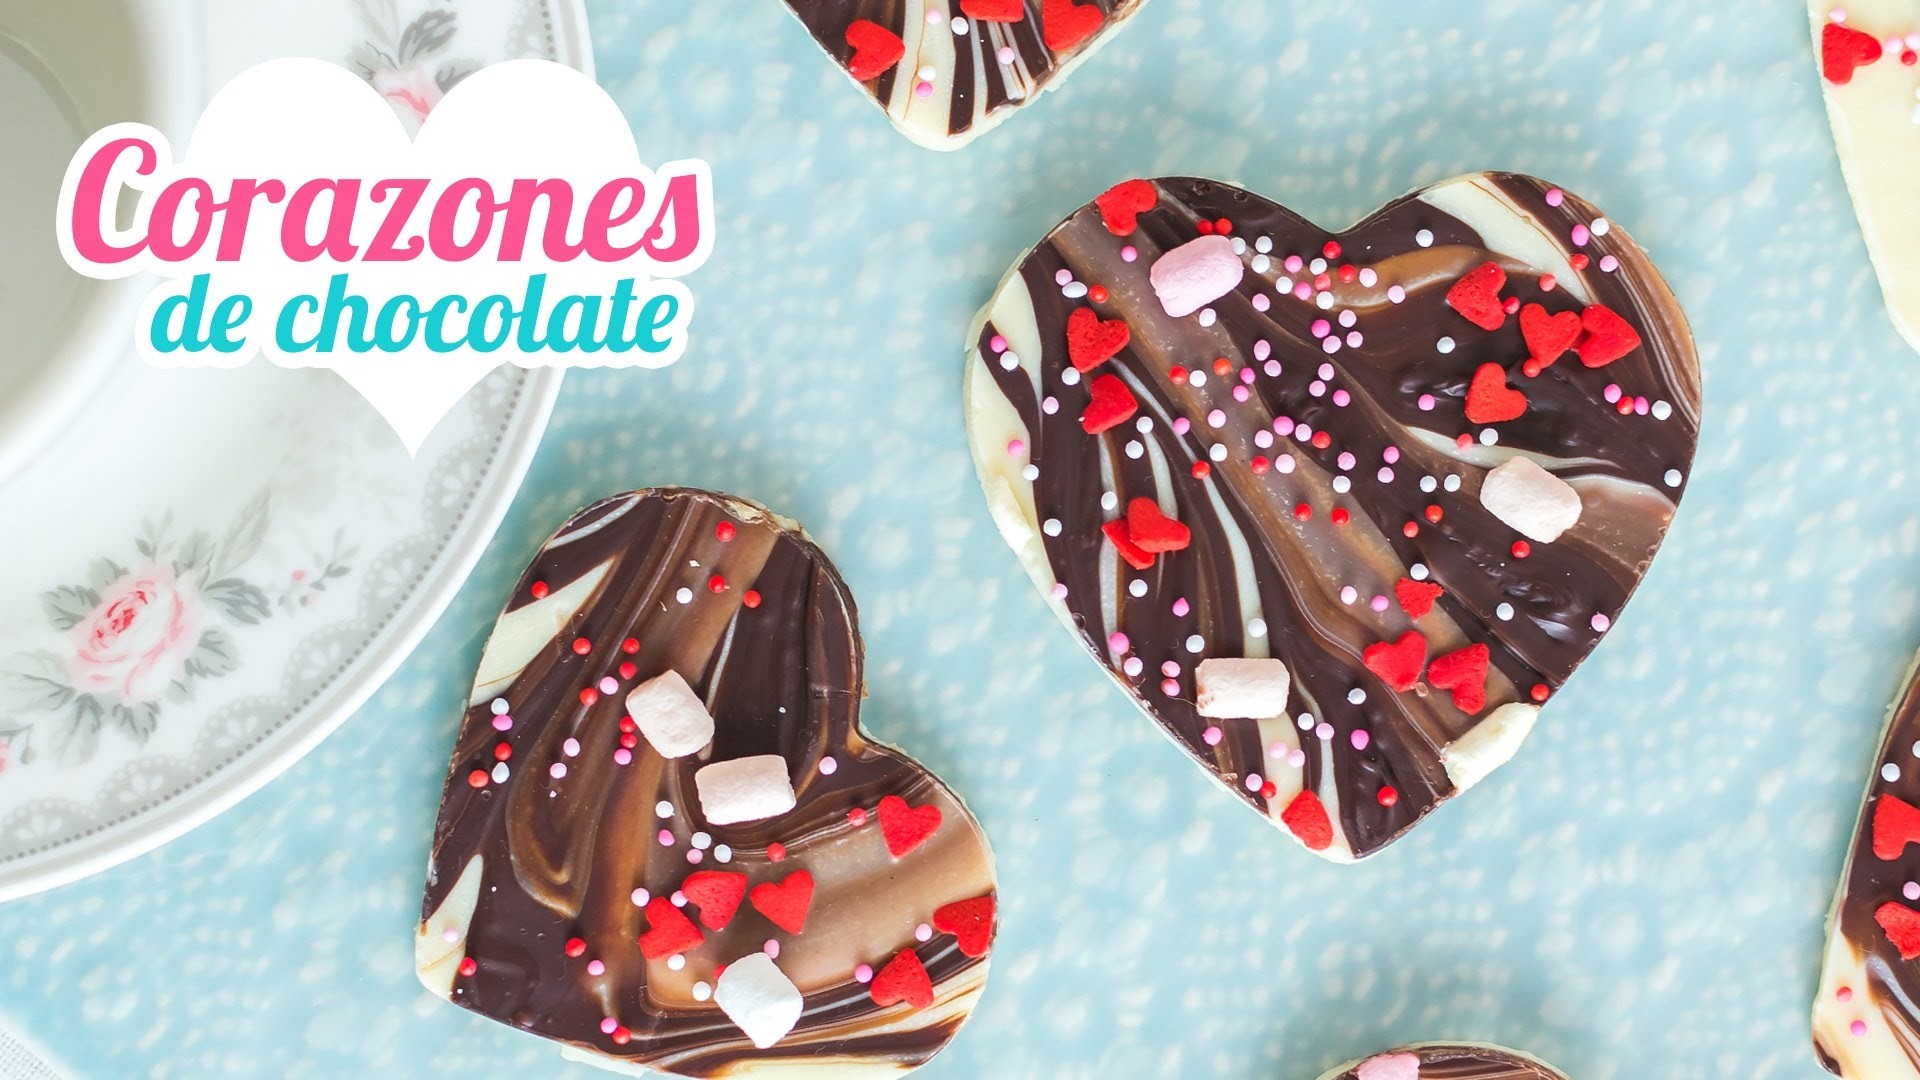 Corazones de chocolate | Chocolate bark | San Valentín | Quiero Cupcakes!